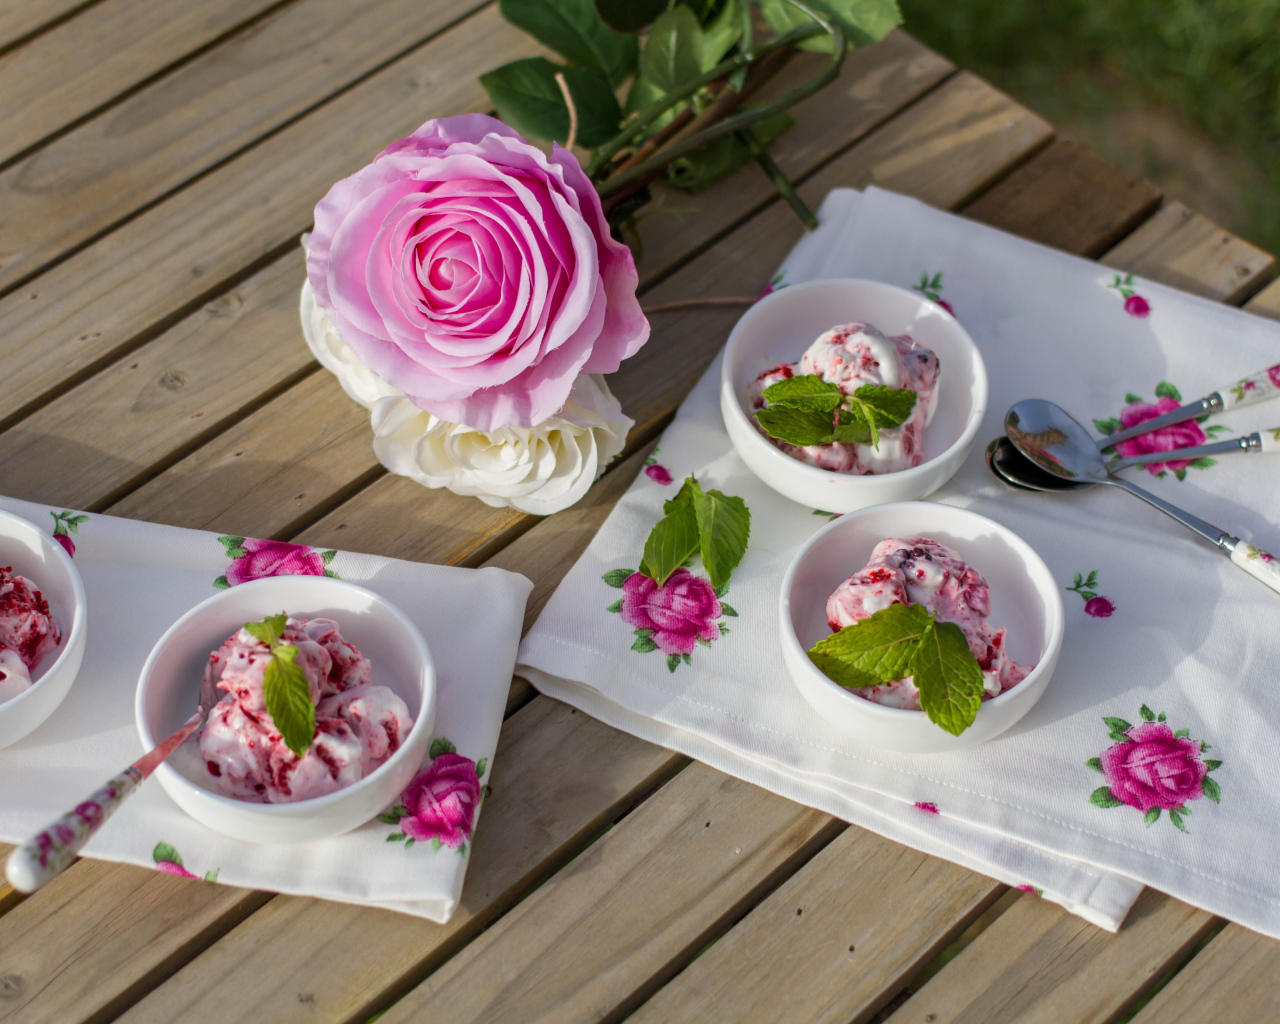 Мороженое на столе с розовой розой 